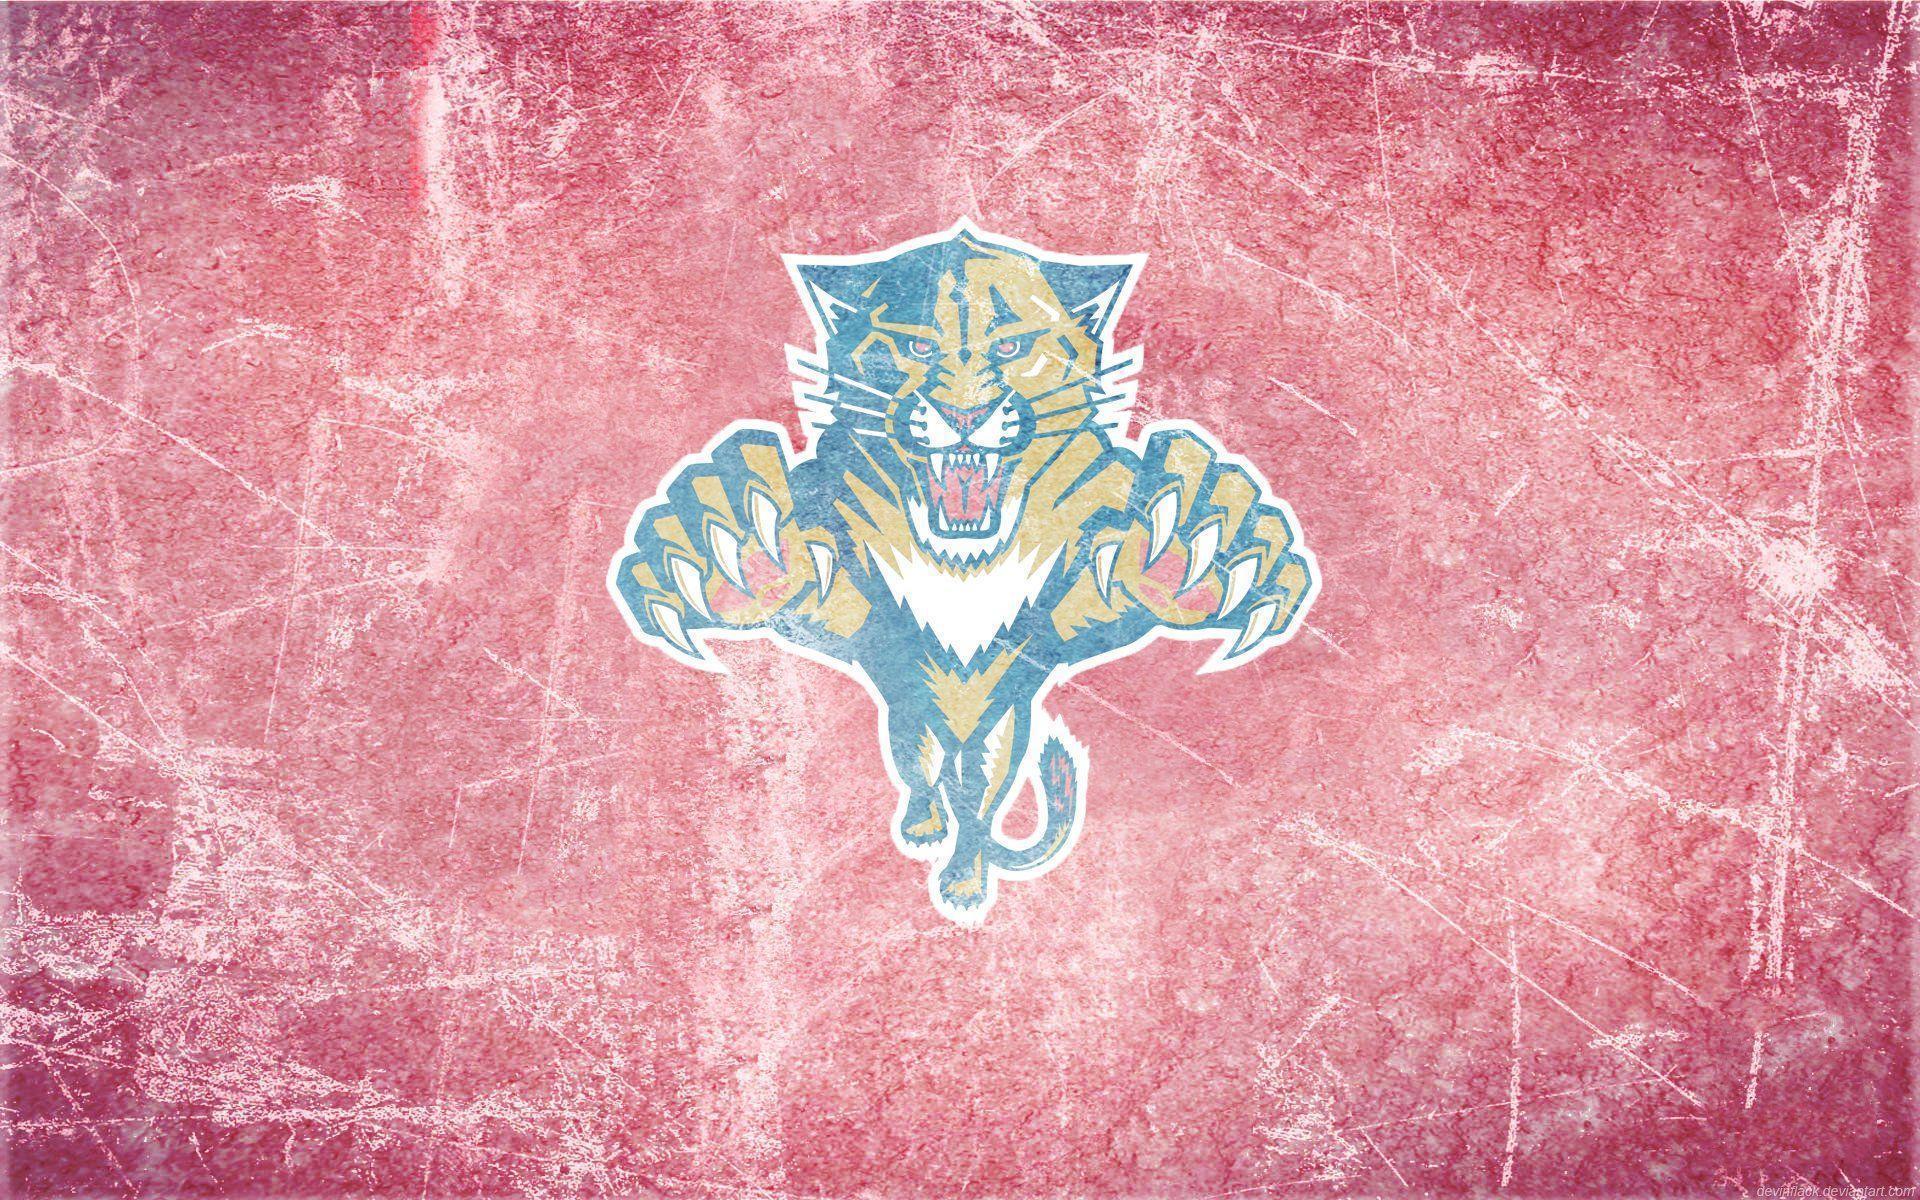 200+] Florida Panthers Wallpapers